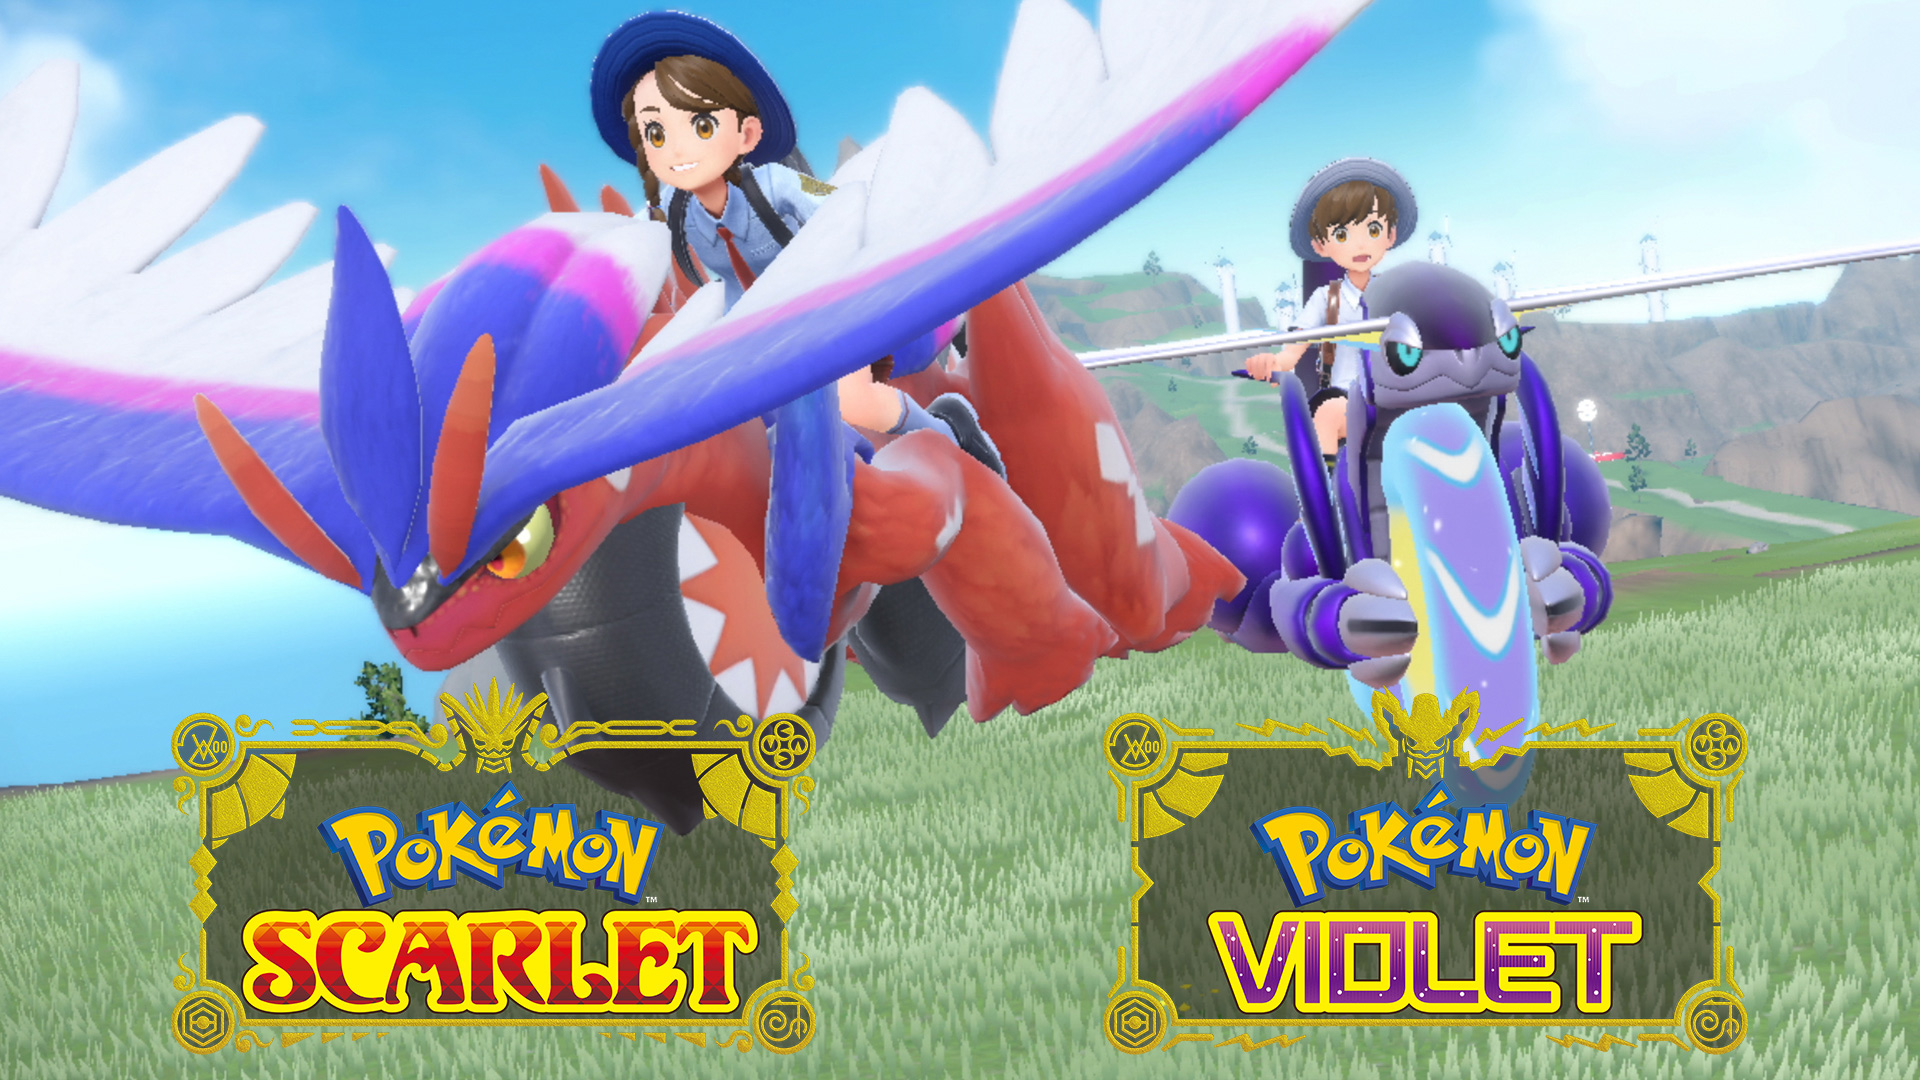 เกมใหม่ล่าสุดจากซีรีส์ Pokémon Scarlet and Pokémon Violet  เปิดตัววิดีโอพิเศษก่อนวางจำหน่าย